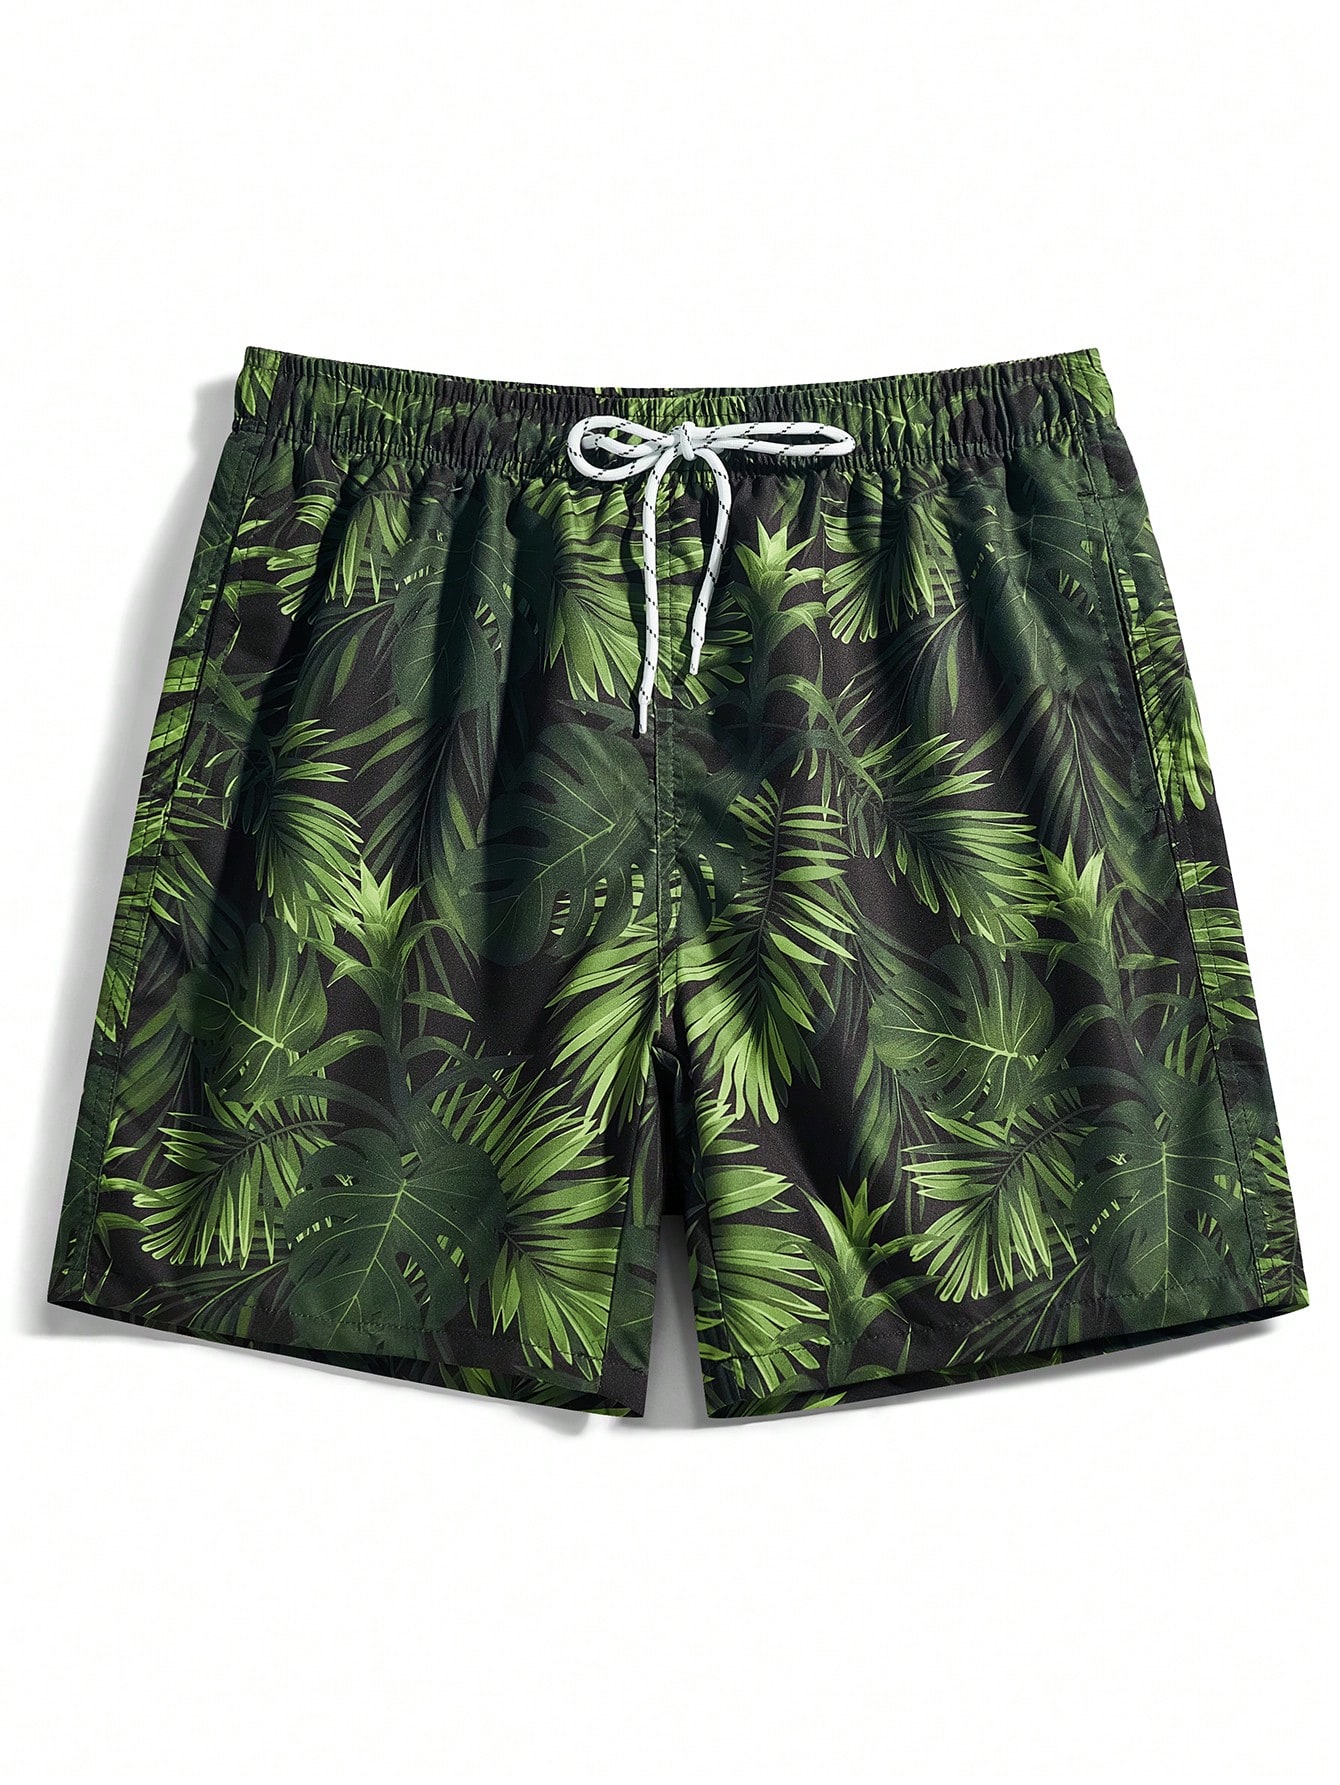 Мужские пляжные шорты Manfinity с тропическим принтом и завязками на талии, армейский зеленый мужские повседневные шорты с леопардовым принтом штаны для плавания гавайские пляжные шорты быстросохнущие для пляжа для отпуска лето